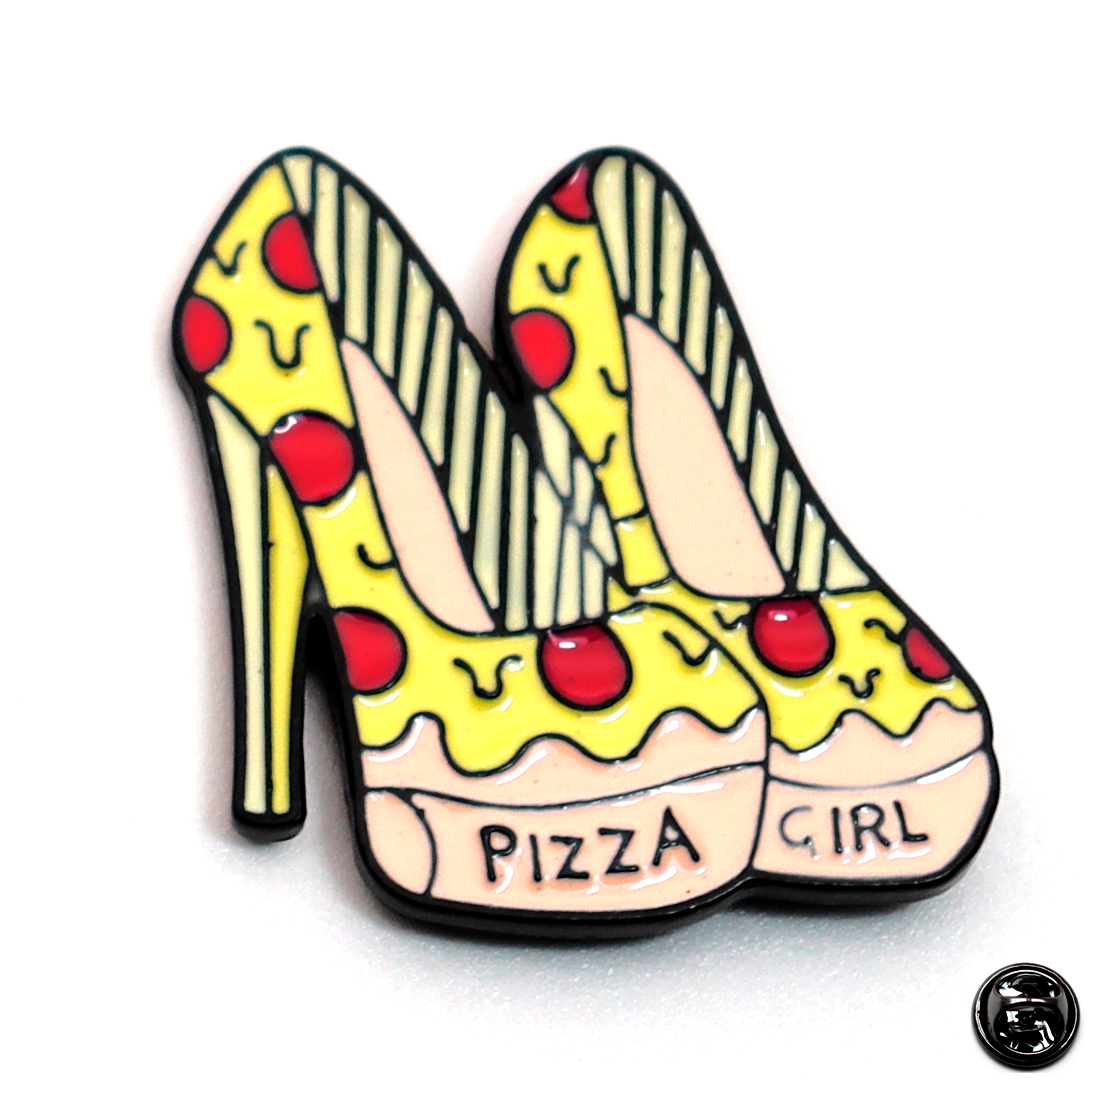 Prendedor (pin) Pizza Girl + Bolsa decorativa